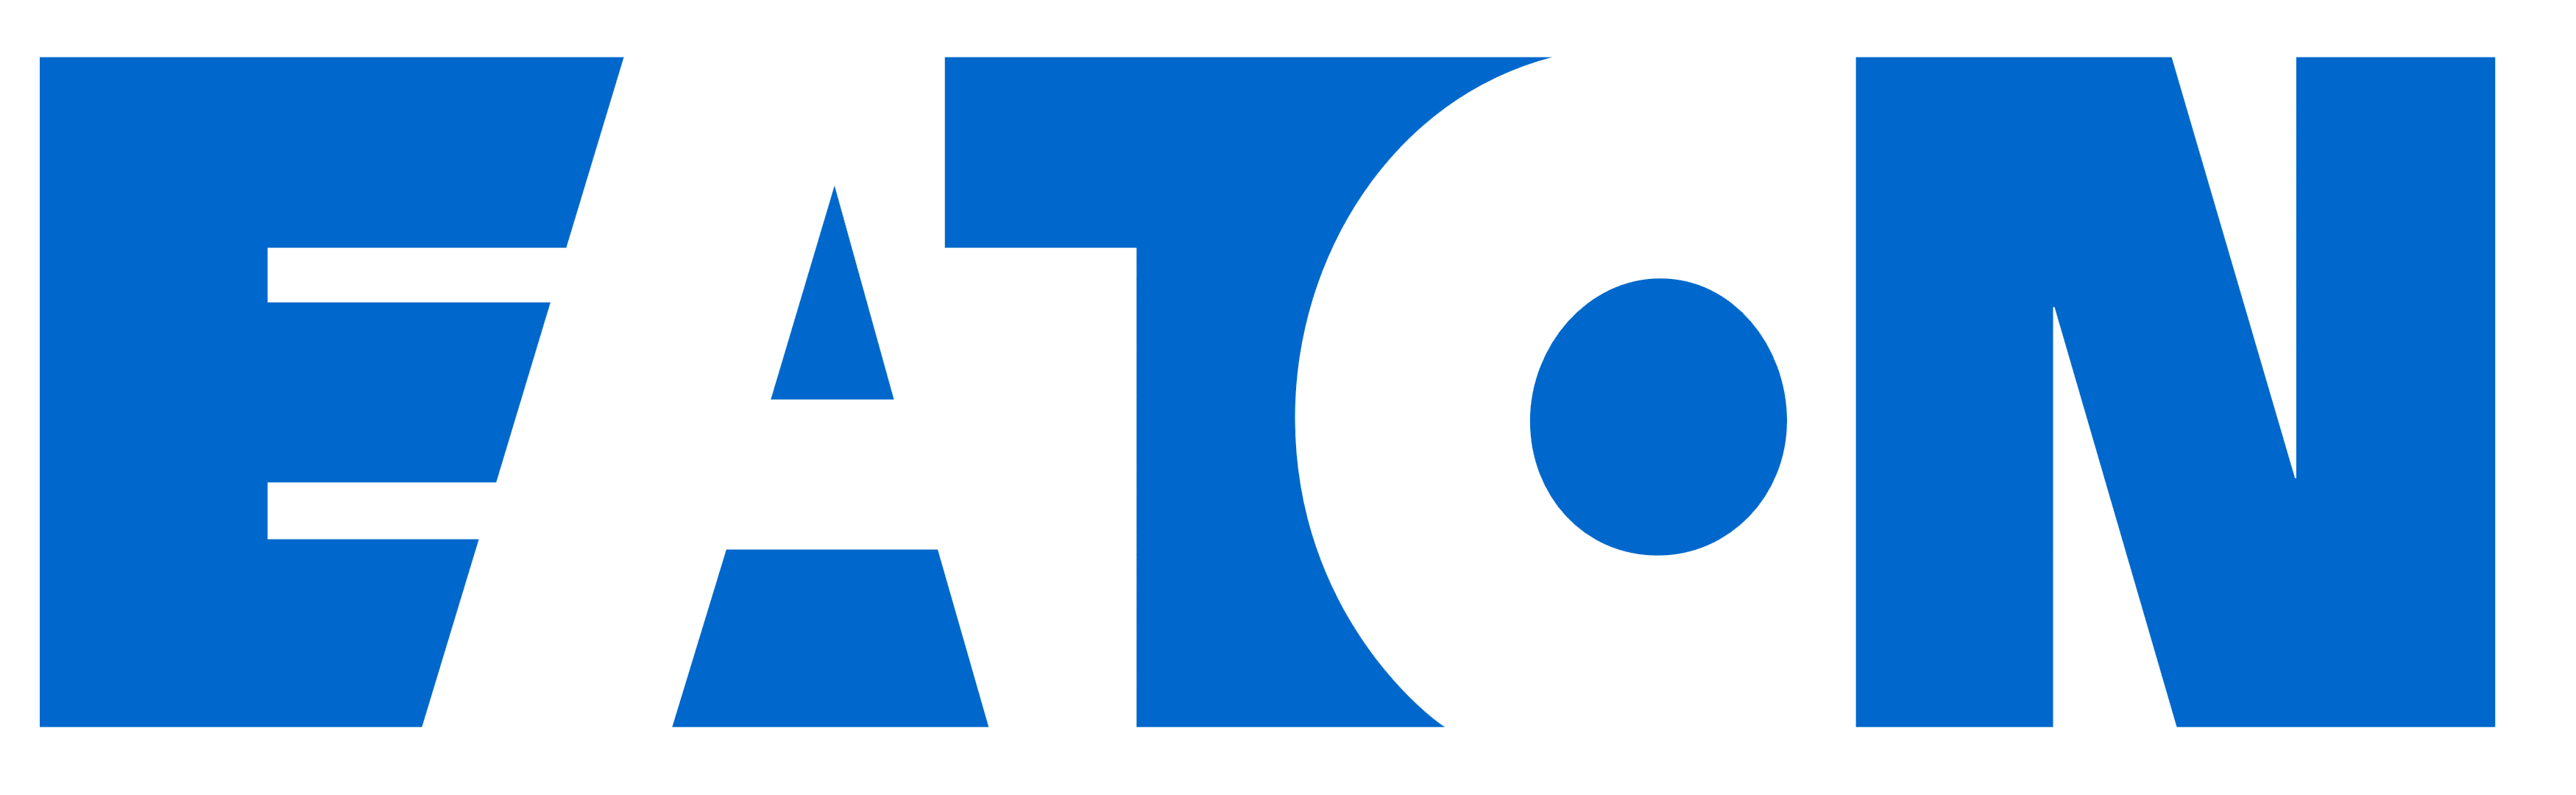  Eaton Logos